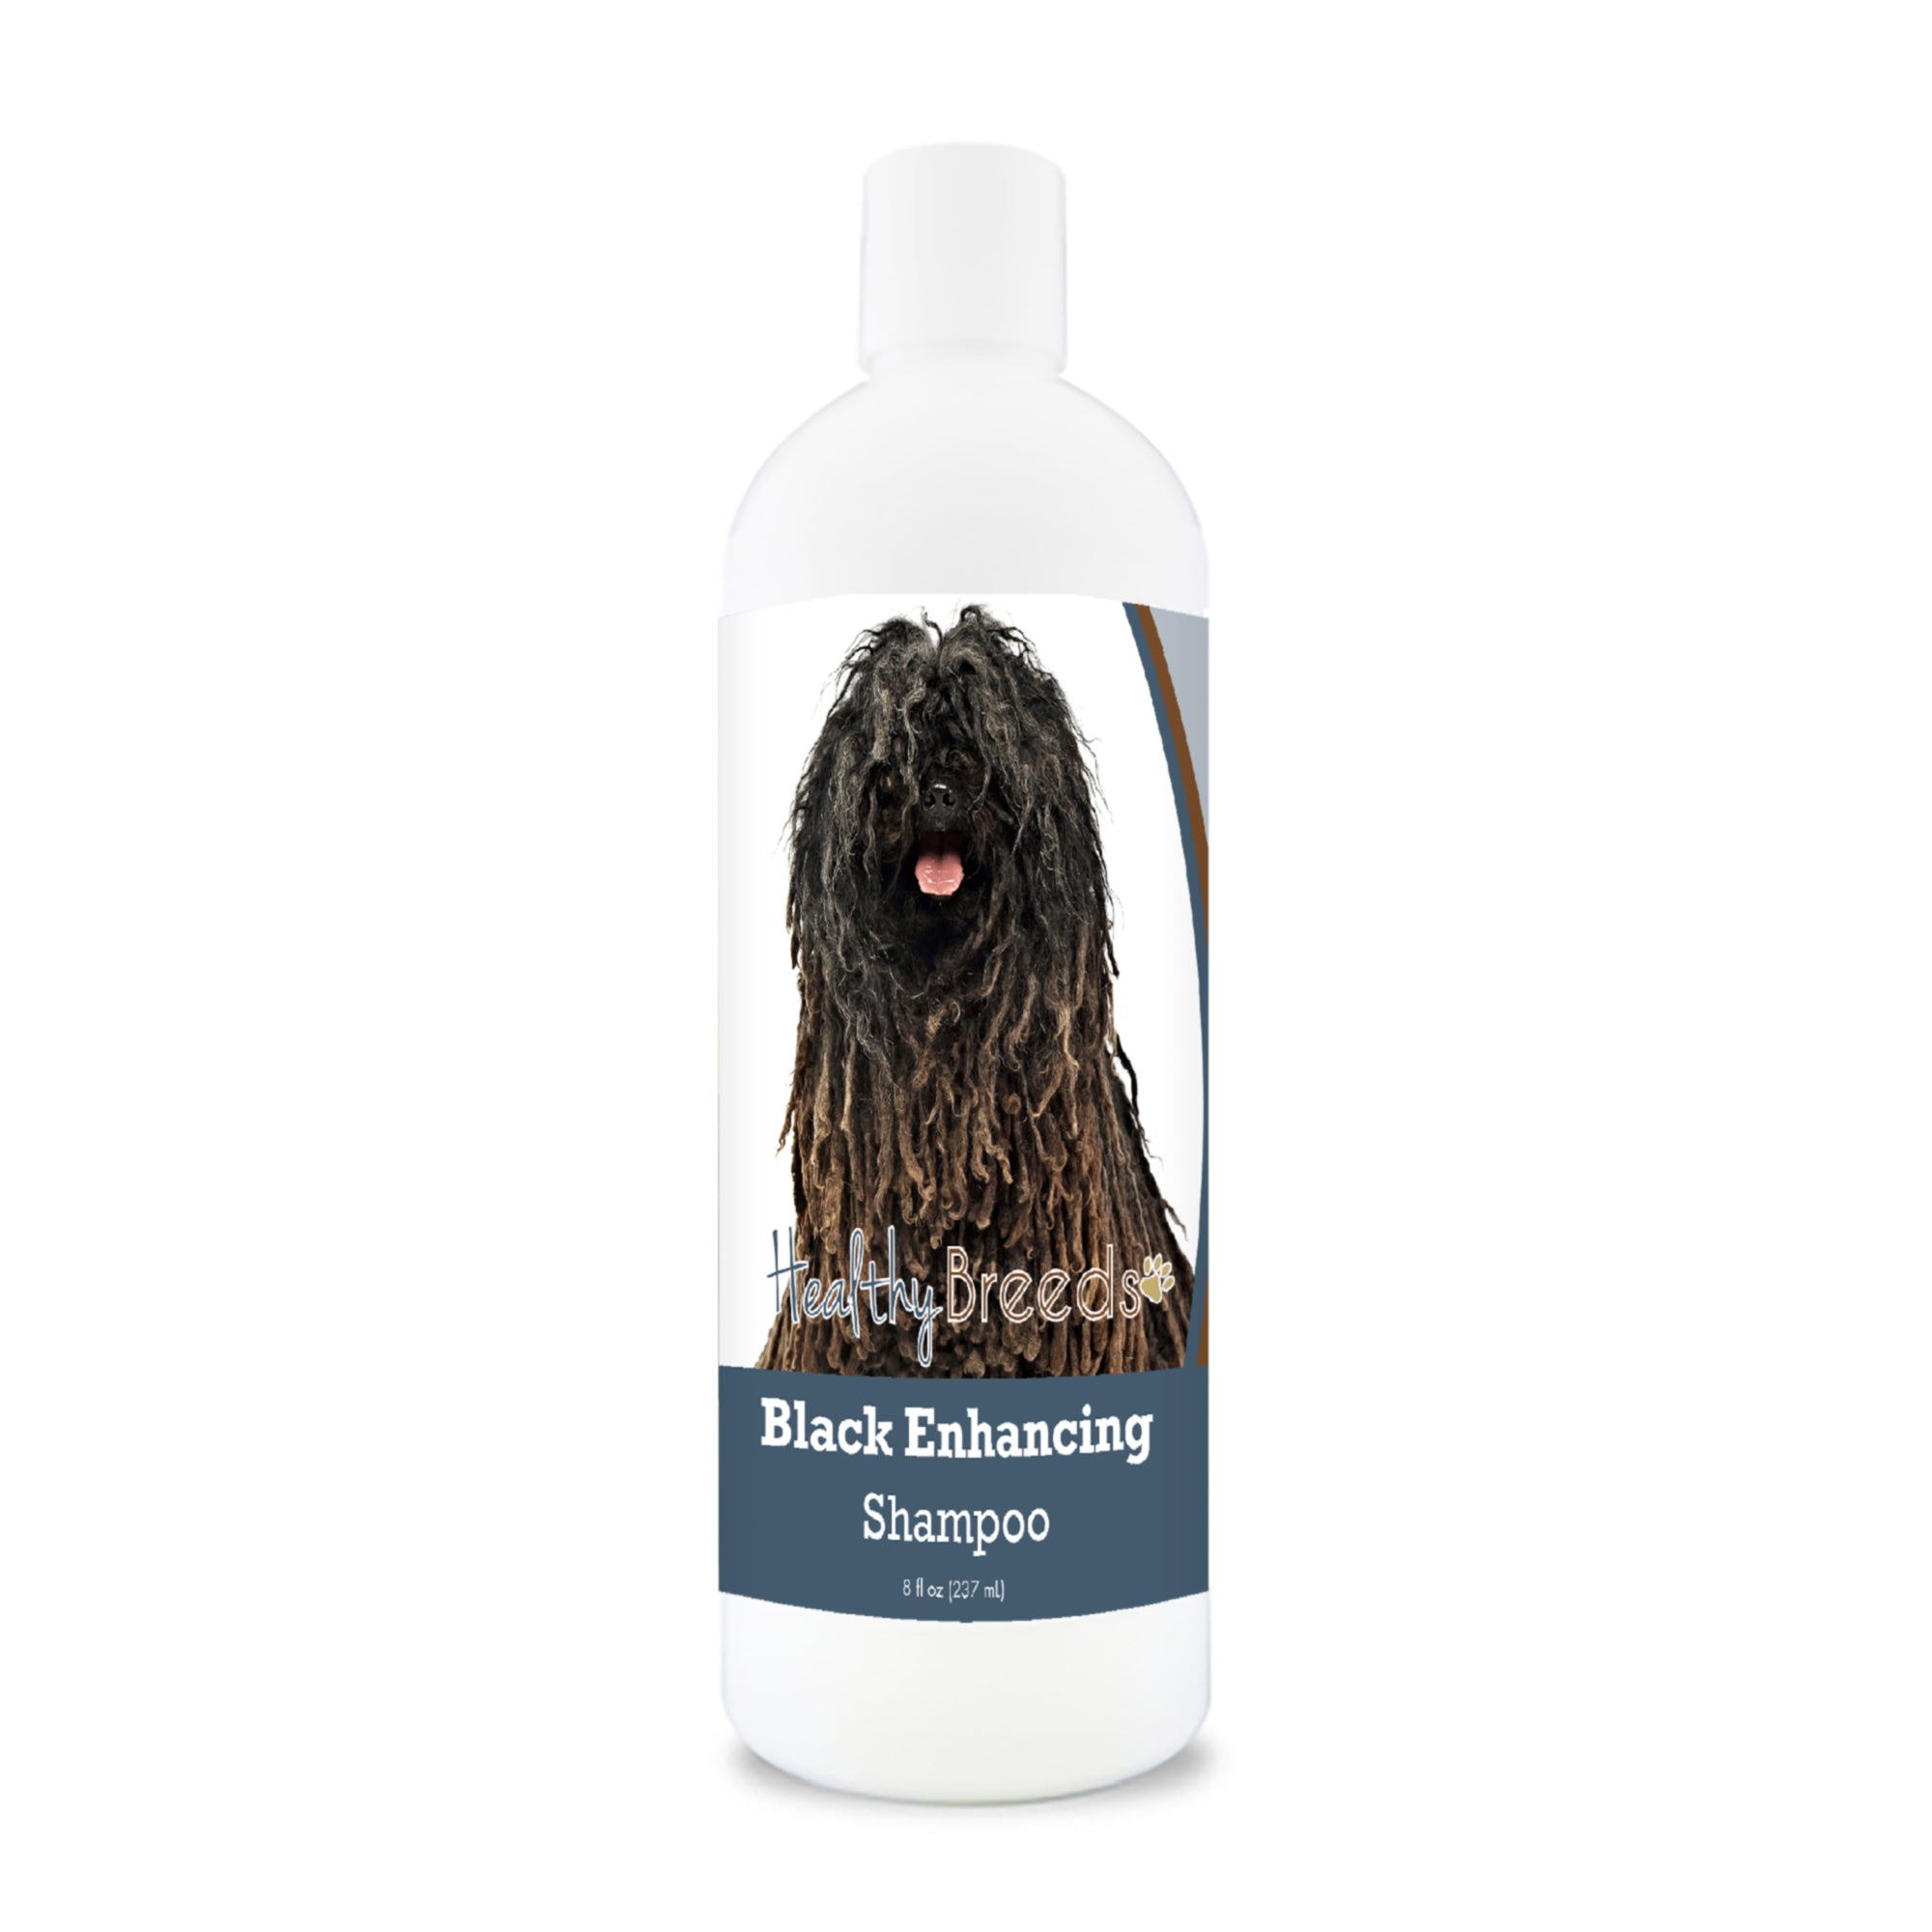 Pulik Black Enhancing Shampoo 8 oz